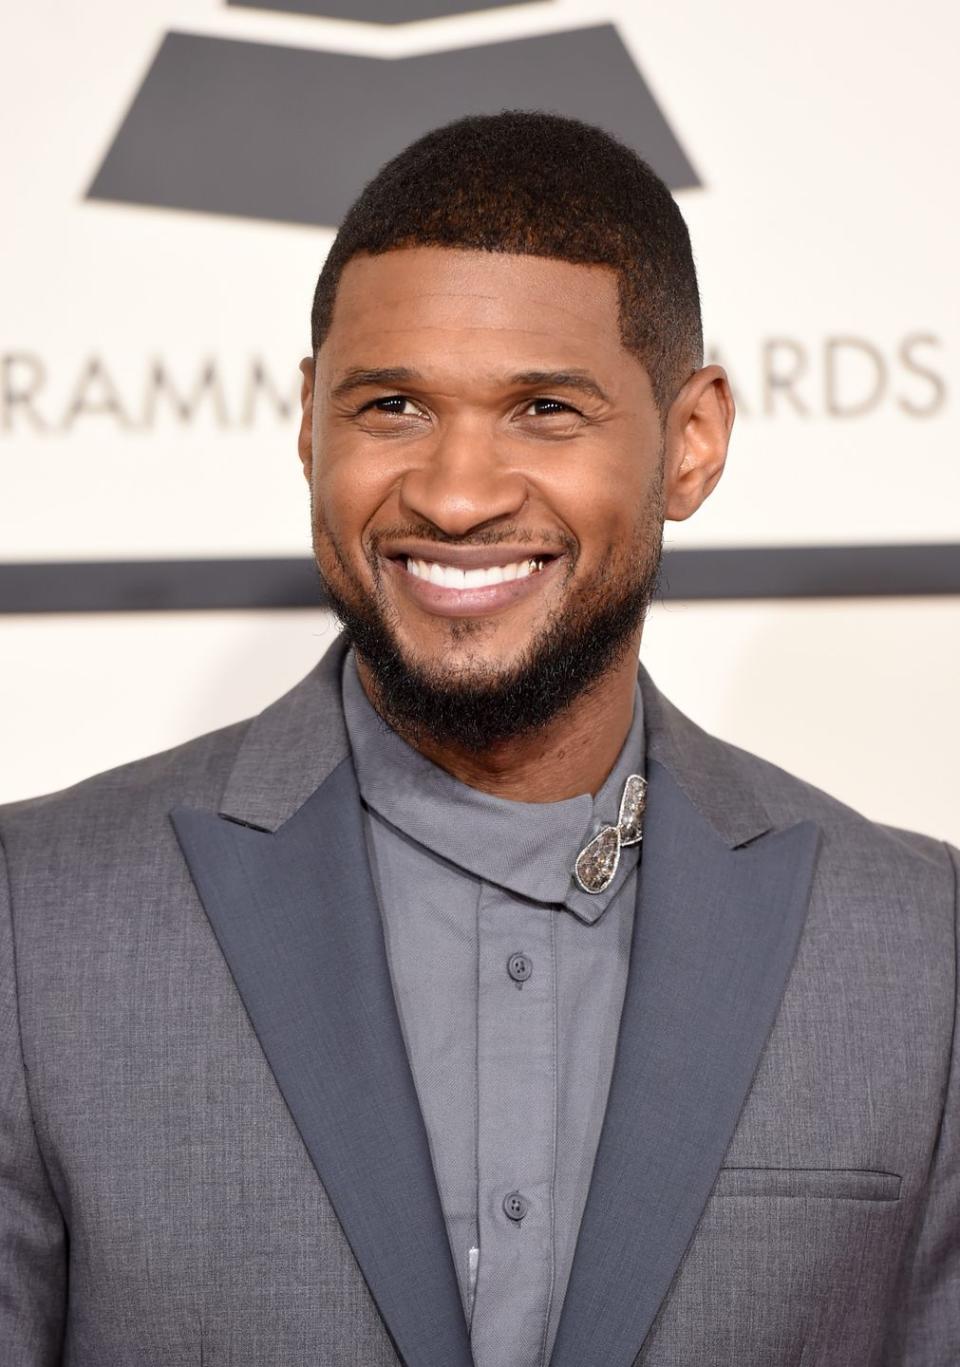 9) Usher